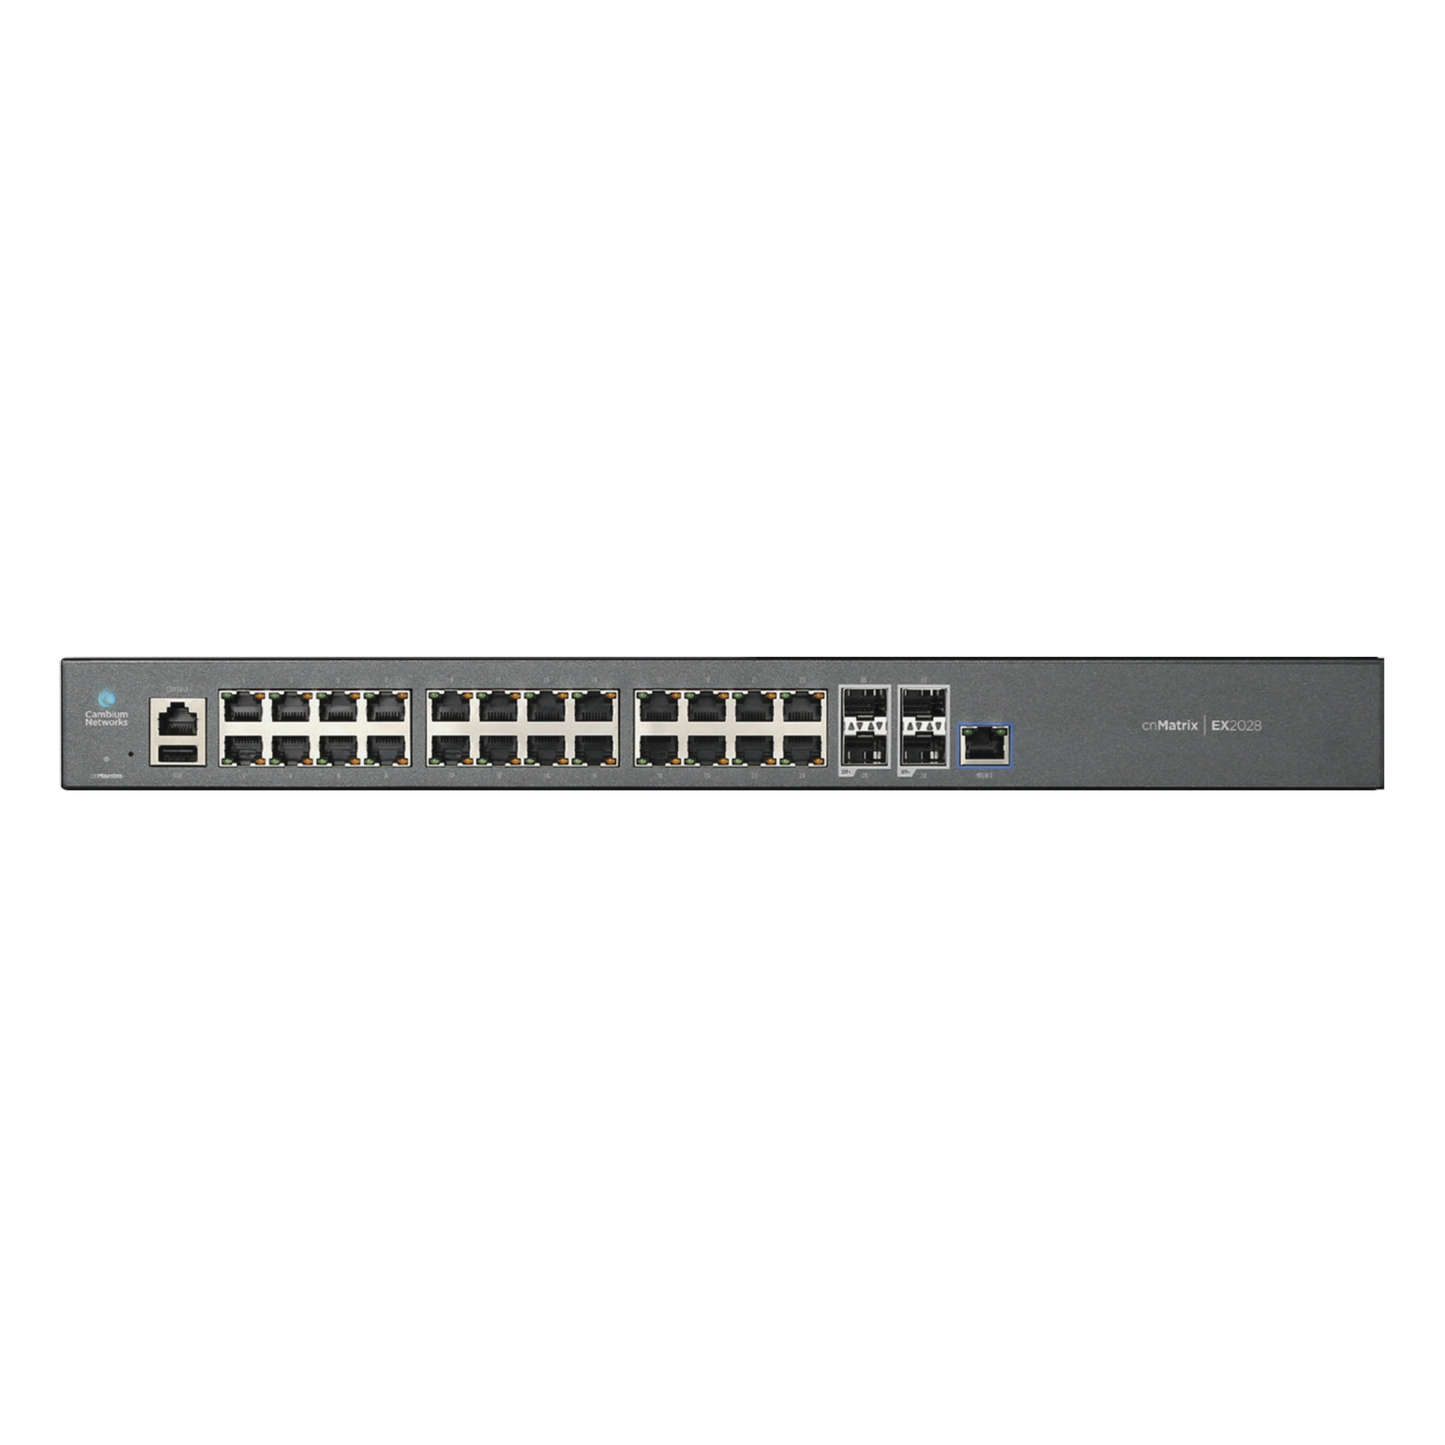 Switch cnMatrix EX2028 capa 3 de 28 puertos (24 Ethernet Gigabit, 4 SFP+) administración desde la Nube (MX-EX2028XXA-U)